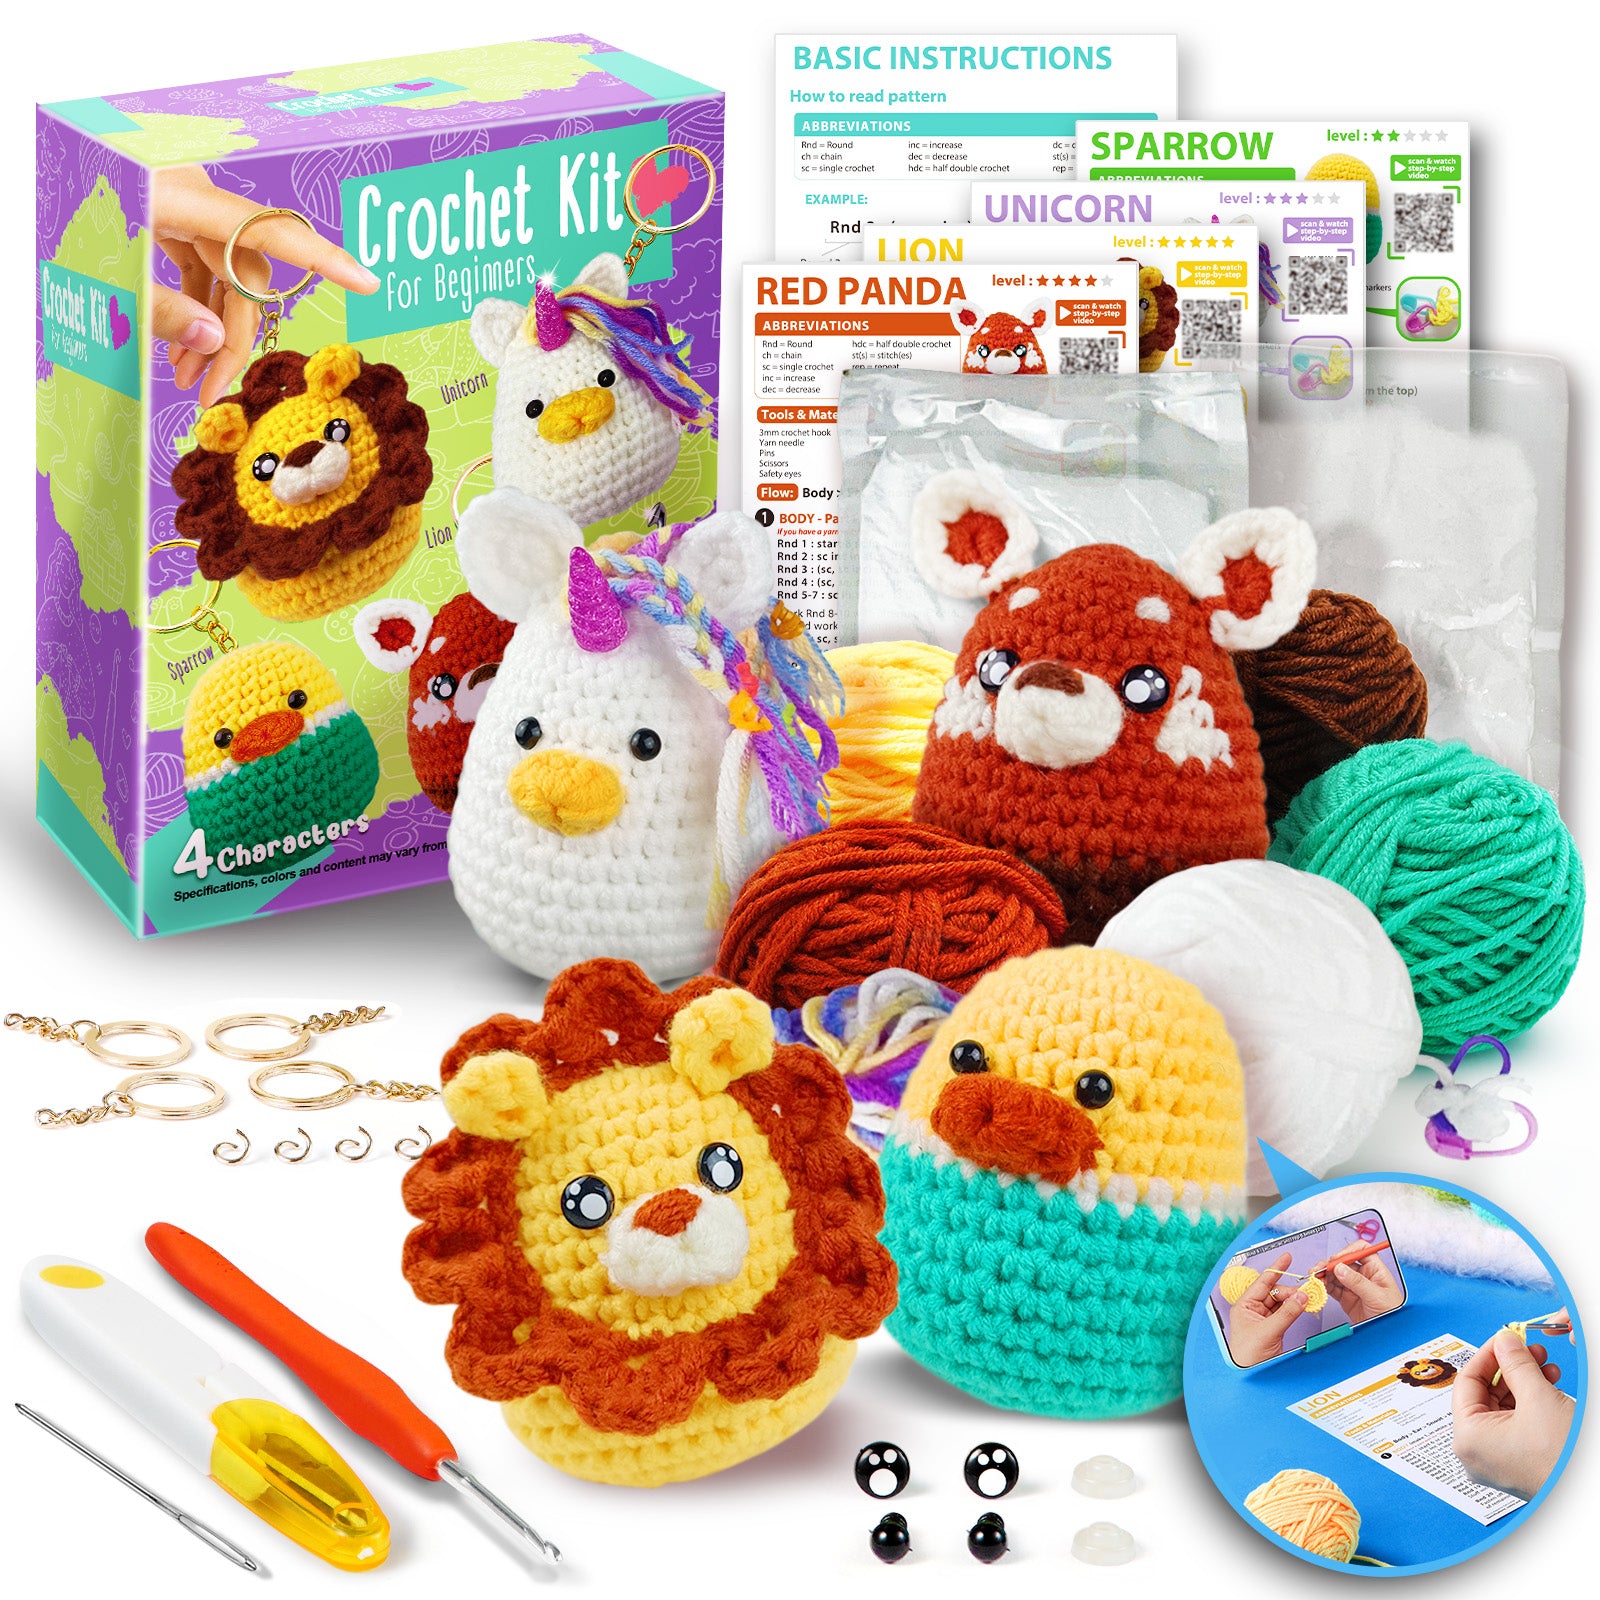 Crochet Kit for Beginners 